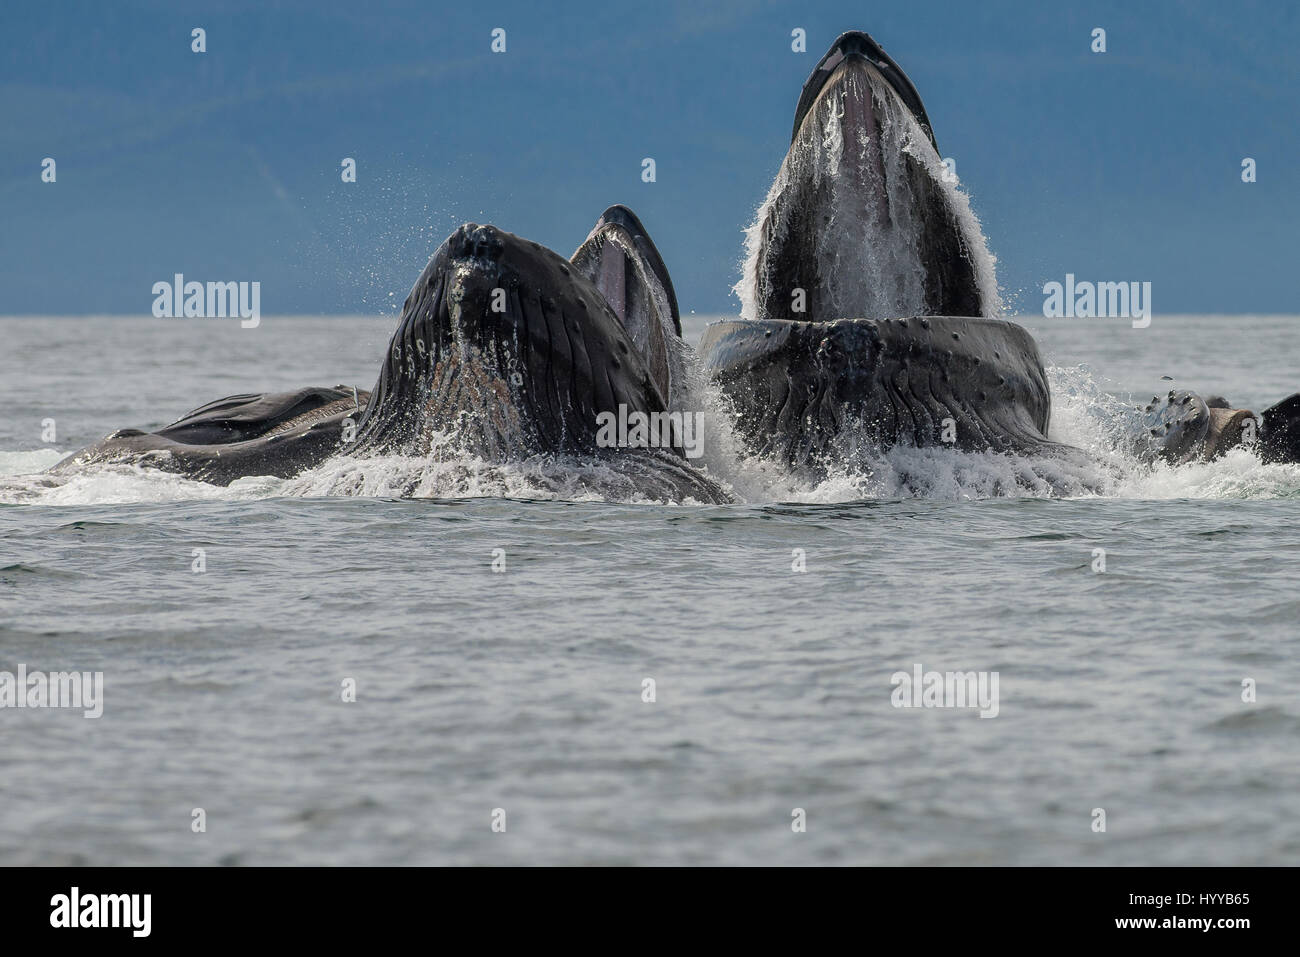 ALASKA, USA: balene Humpback bolla alimentazione rete. Spettacolari immagini di balene Humpback che appare simile a quella di una catena montuosa come essi bolla net mangimi sono stati catturati. L'incredibile serie di foto mostrano come i trenta-tonnellata balene immersione subacquea a cacciare la loro cena di aringa e poi riemergere rapidamente a ingoiare le loro catture prima che il pesce si può fare una fuga. In un altro colpo, una barca di pescatori guardare lo spettacolo. Un'altra immagine mostra un humpback la scomparsa del tubo di lancio in alto le nuvole. Questo straordinario incontro fu catturato da artista americano e fotografo, Scott Methvin (58) in sud Foto Stock